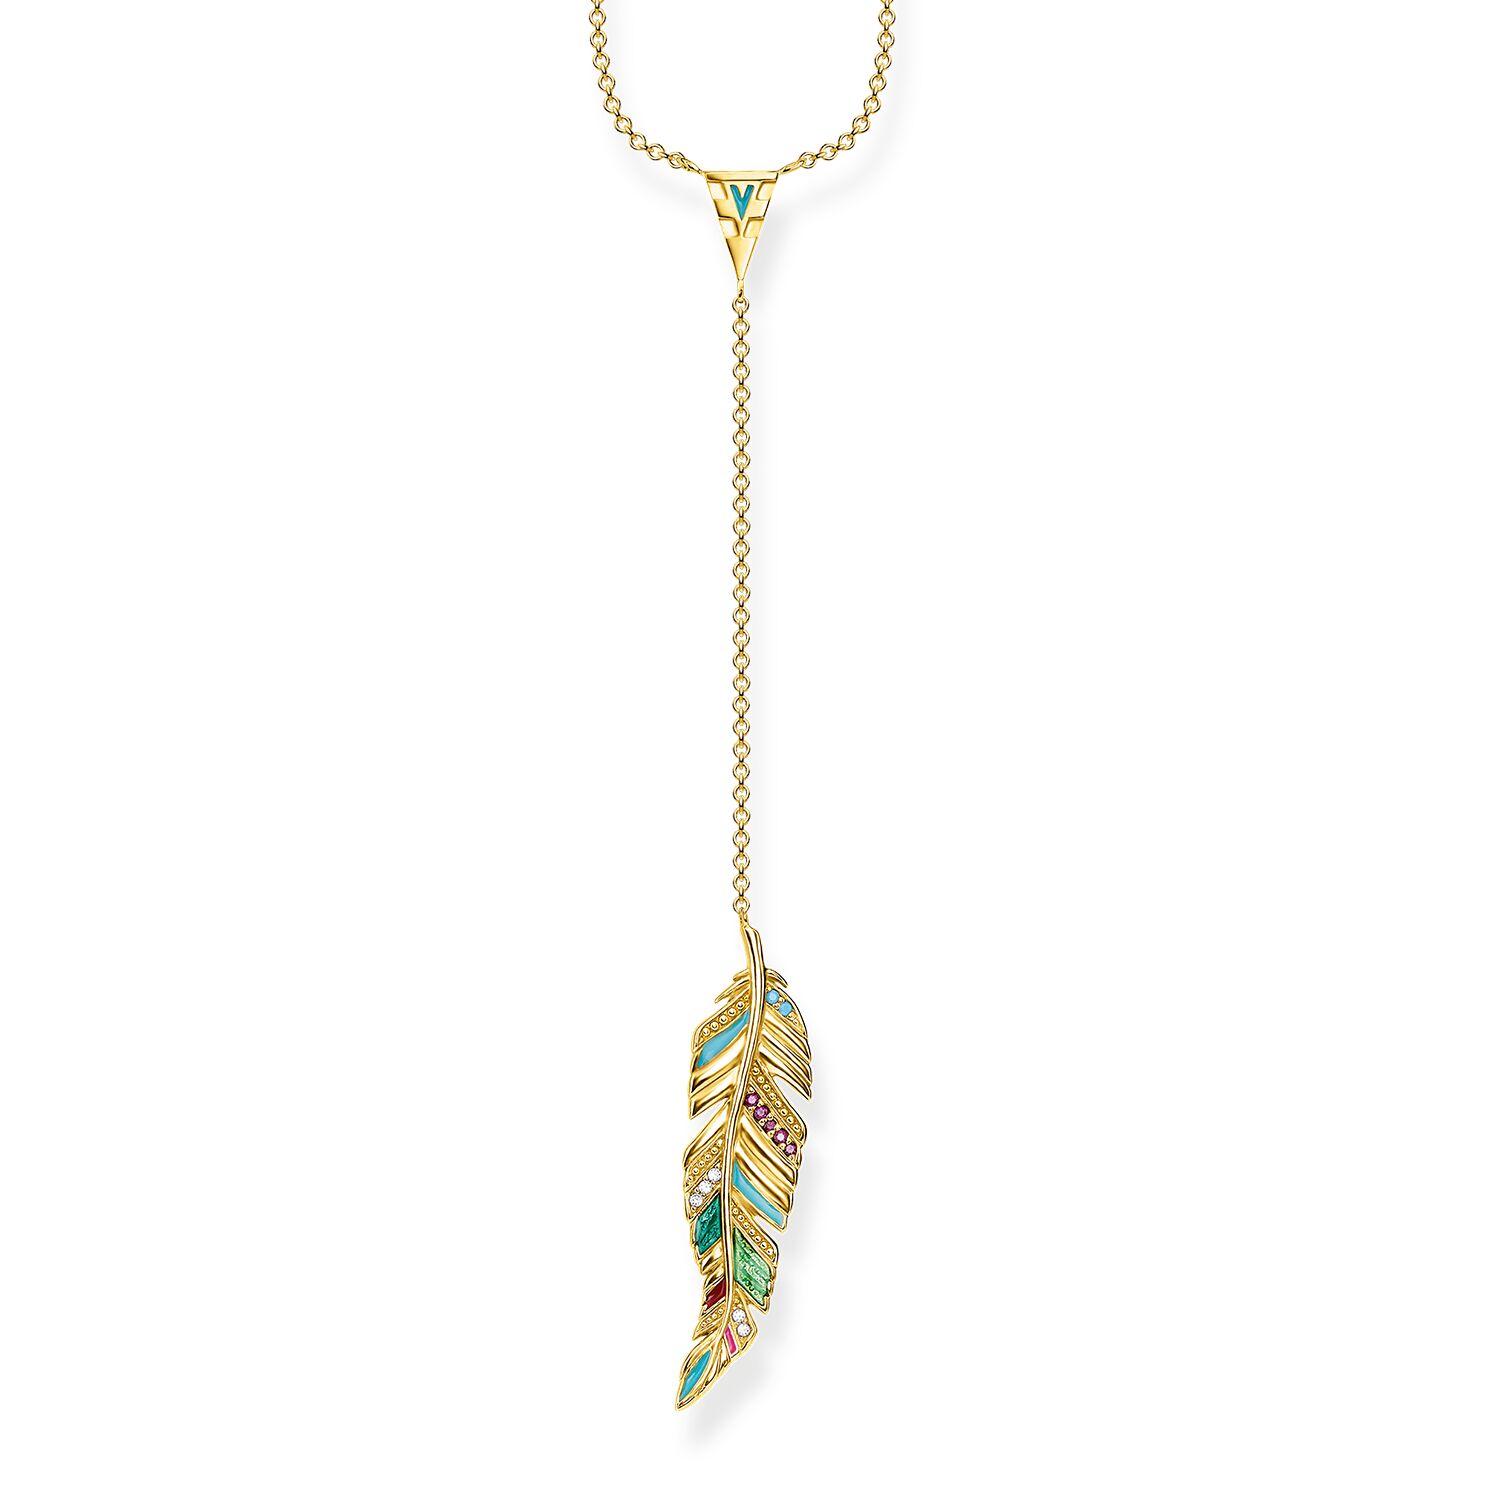 Grosir Perhiasan OEM/ODM Kalung khusus terbuat dari pelapisan emas kuning 18k, perak Sterling 925, enamel dingin